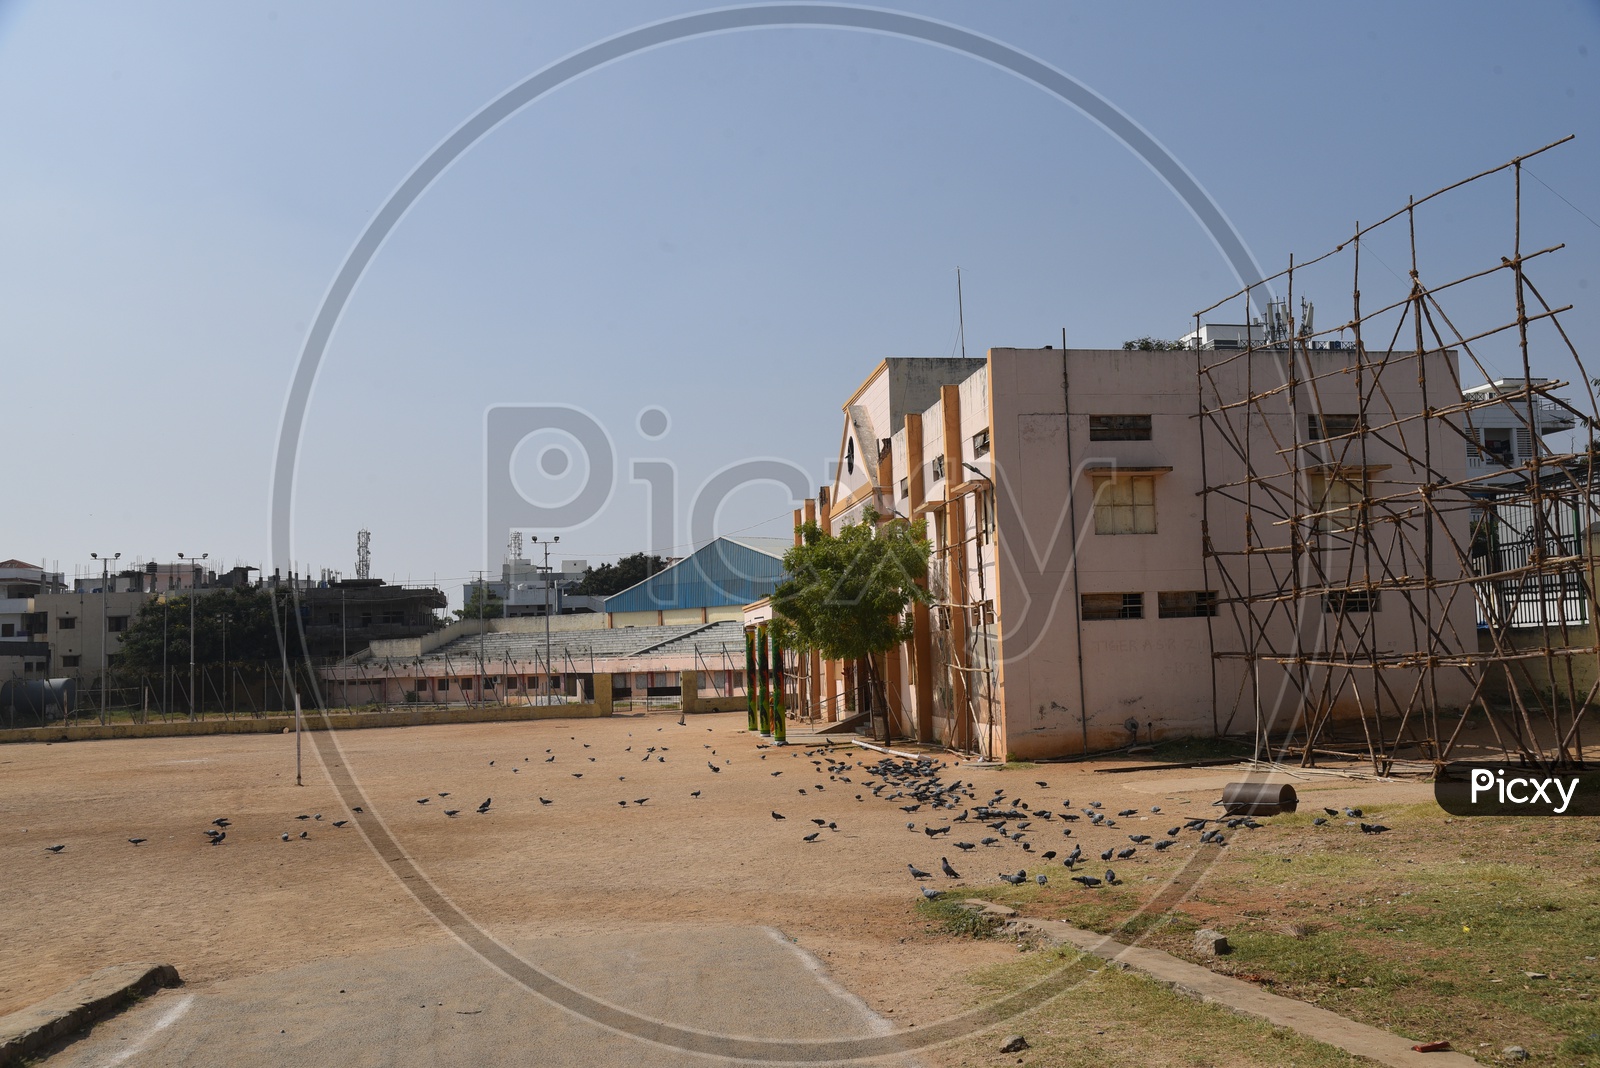 GHMC Municipal Playground in Amberpet , Hyderabad